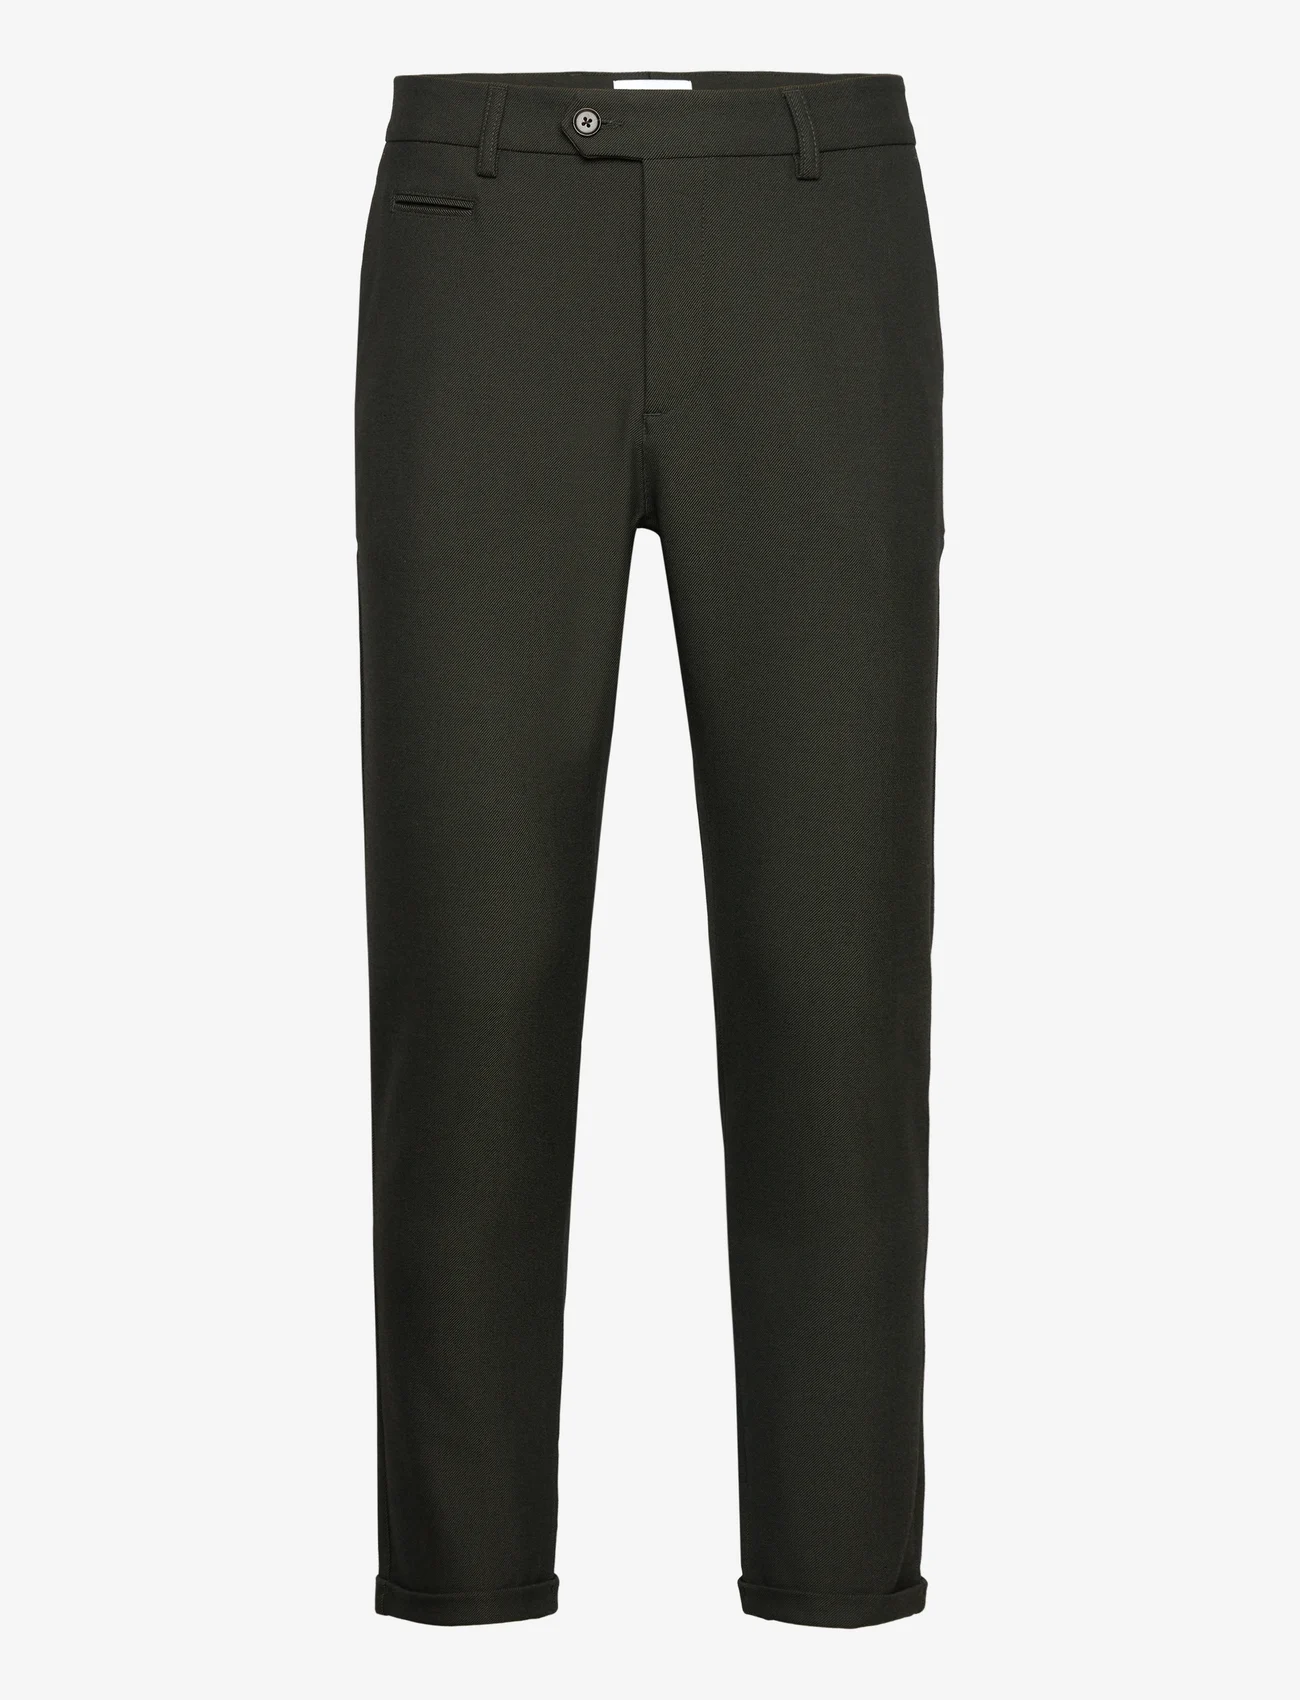 Les Deux - Como Suit Pants - Seasonal - suit trousers - deep forest/charcoal - 0